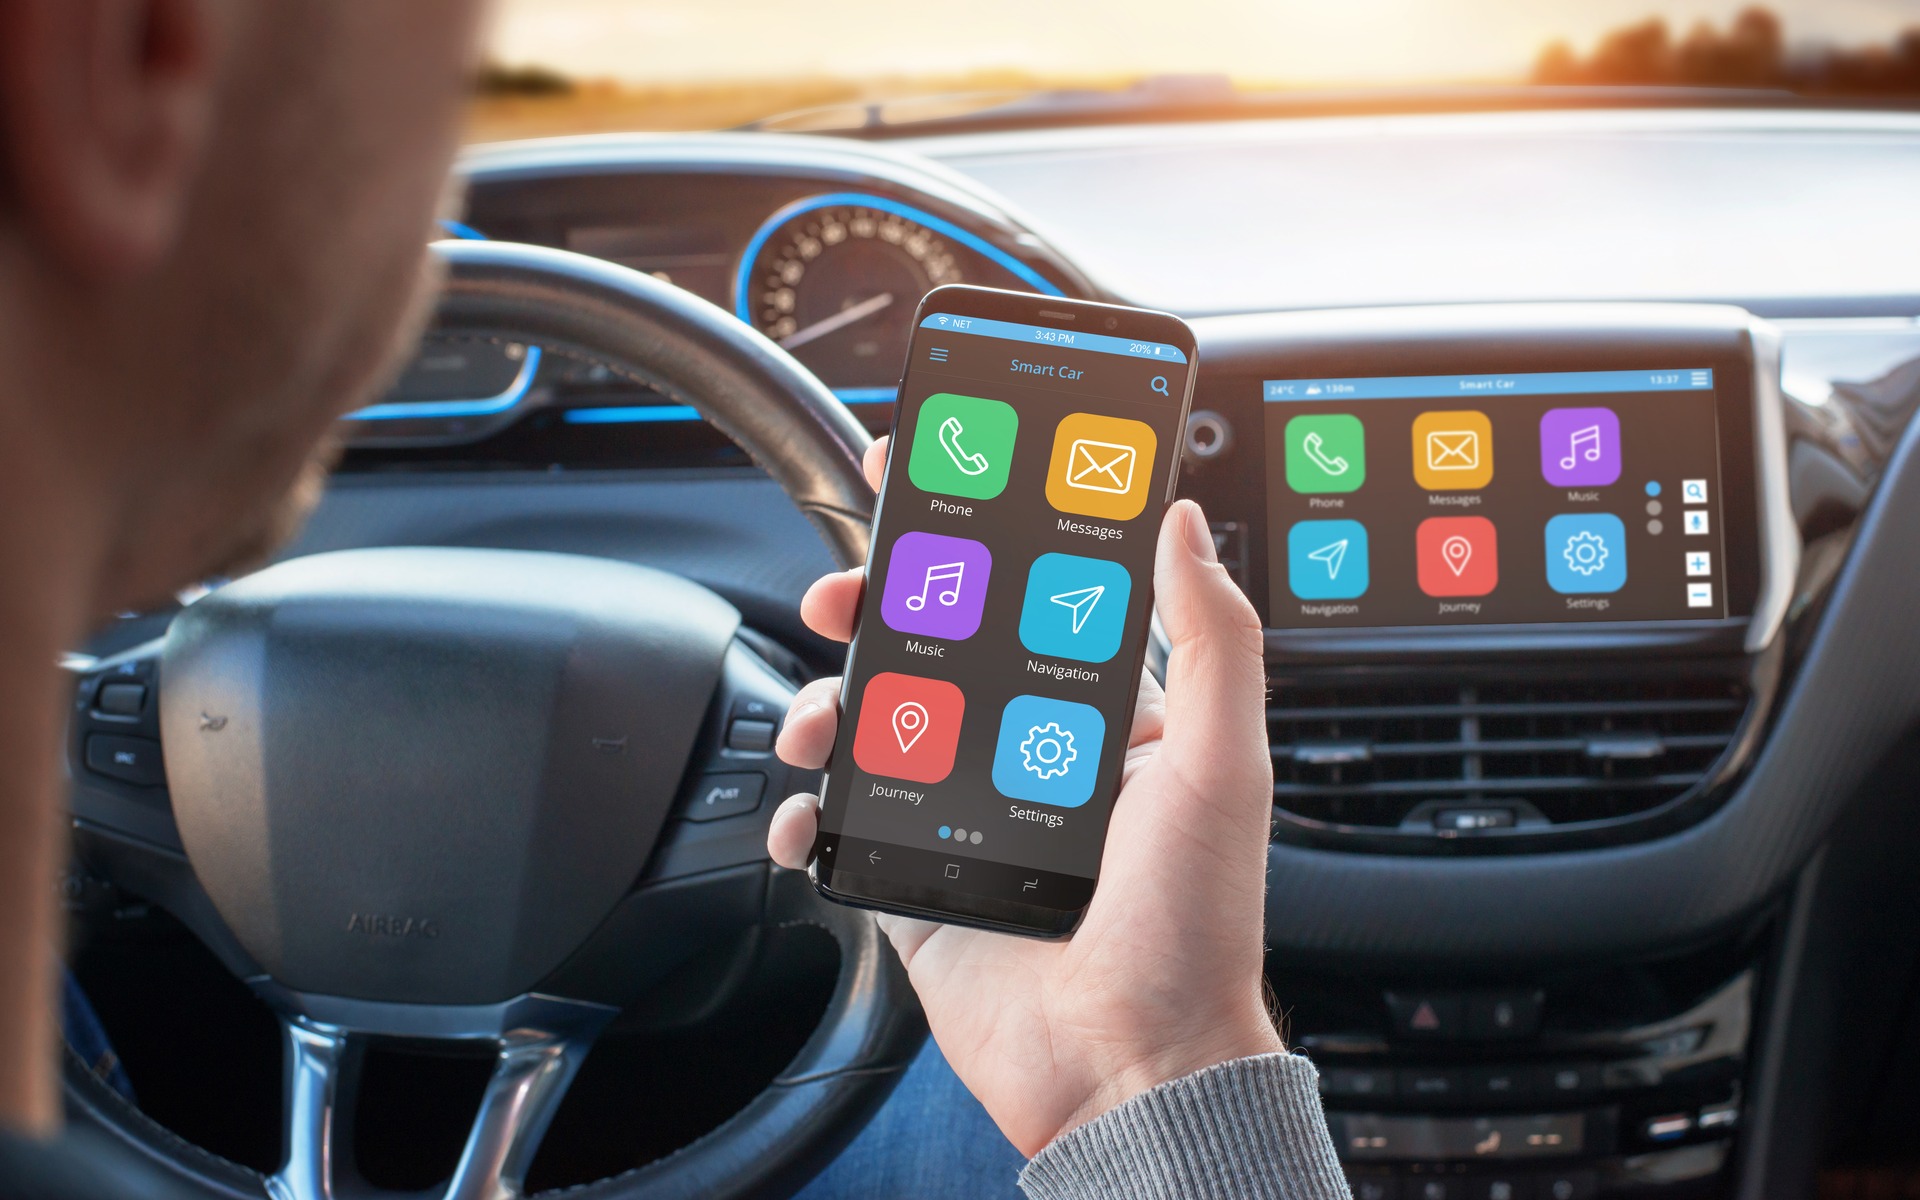 Les écrans tactiles vont-ils être interdits dans nos voitures ?